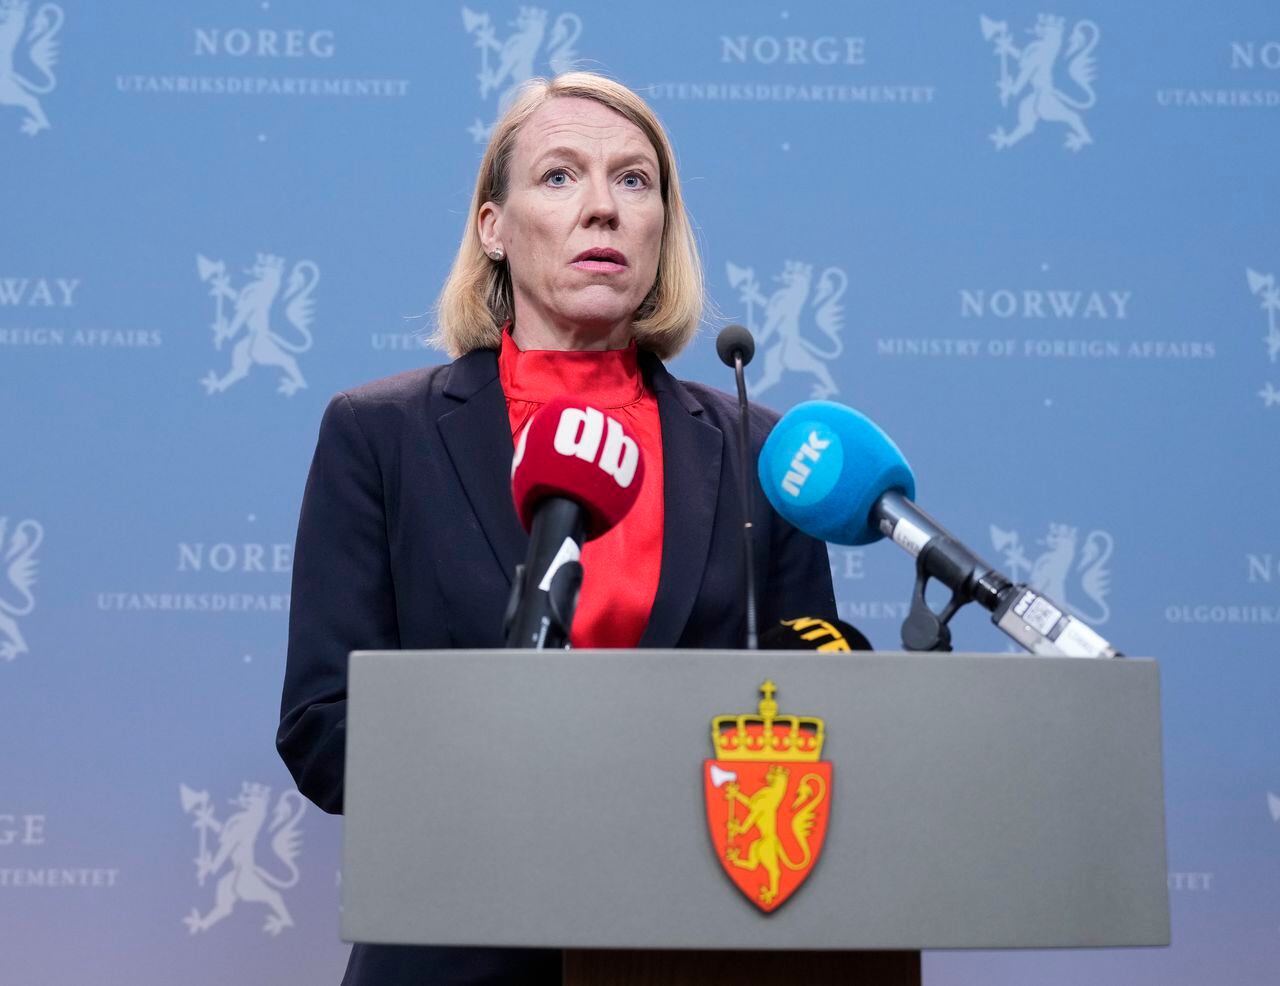 La ministra de Relaciones Exteriores de Noruega, Anniken Huitfeldt, da una conferencia de prensa en el Ministerio de Relaciones Exteriores en Oslo, Noruega